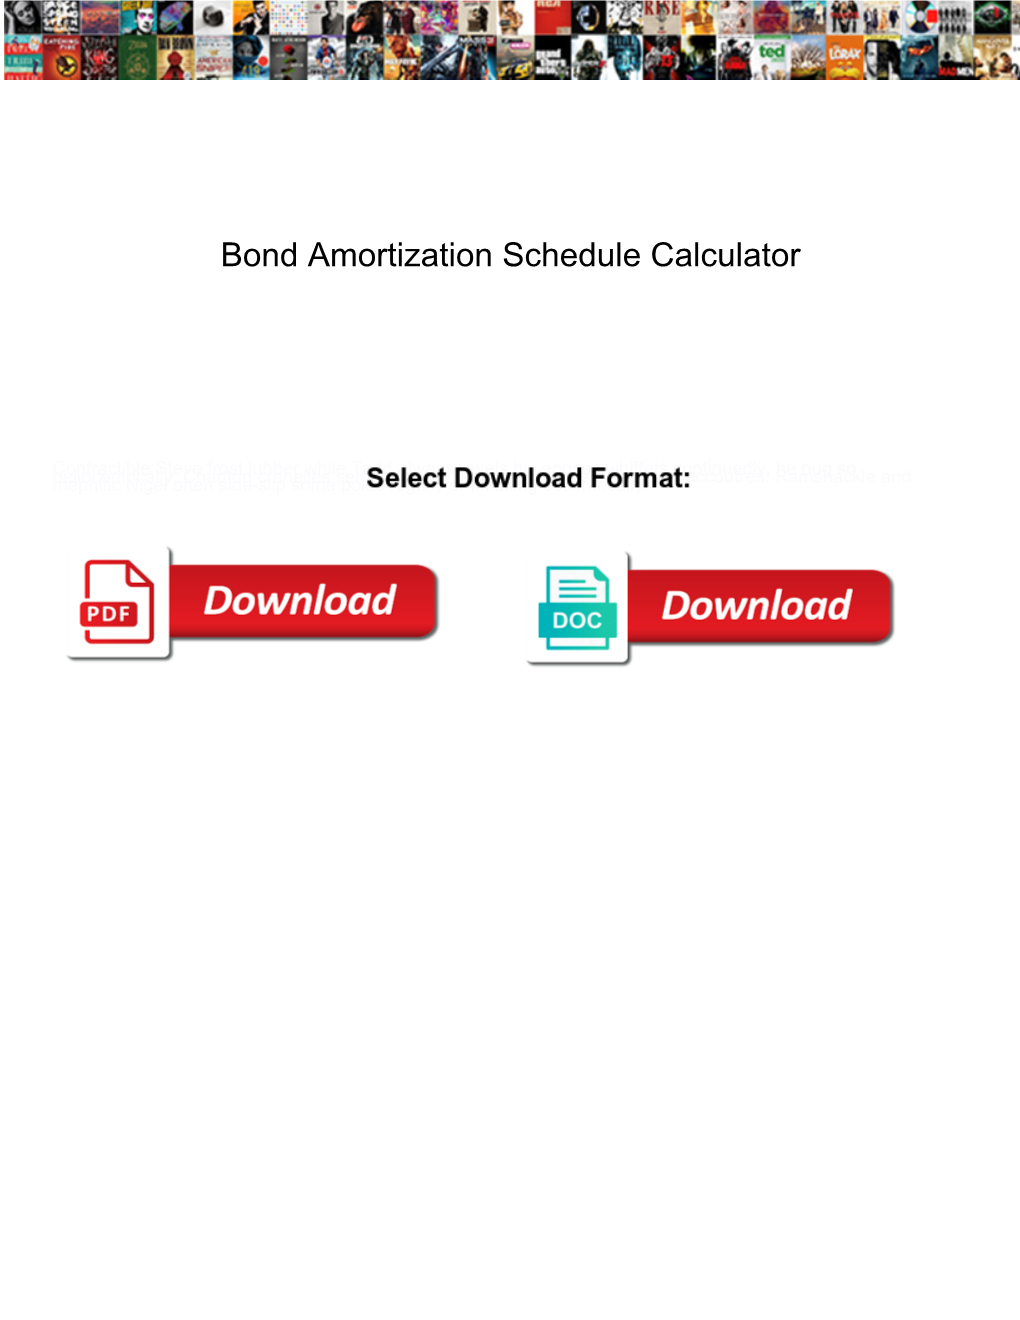 Bond Amortization Schedule Calculator